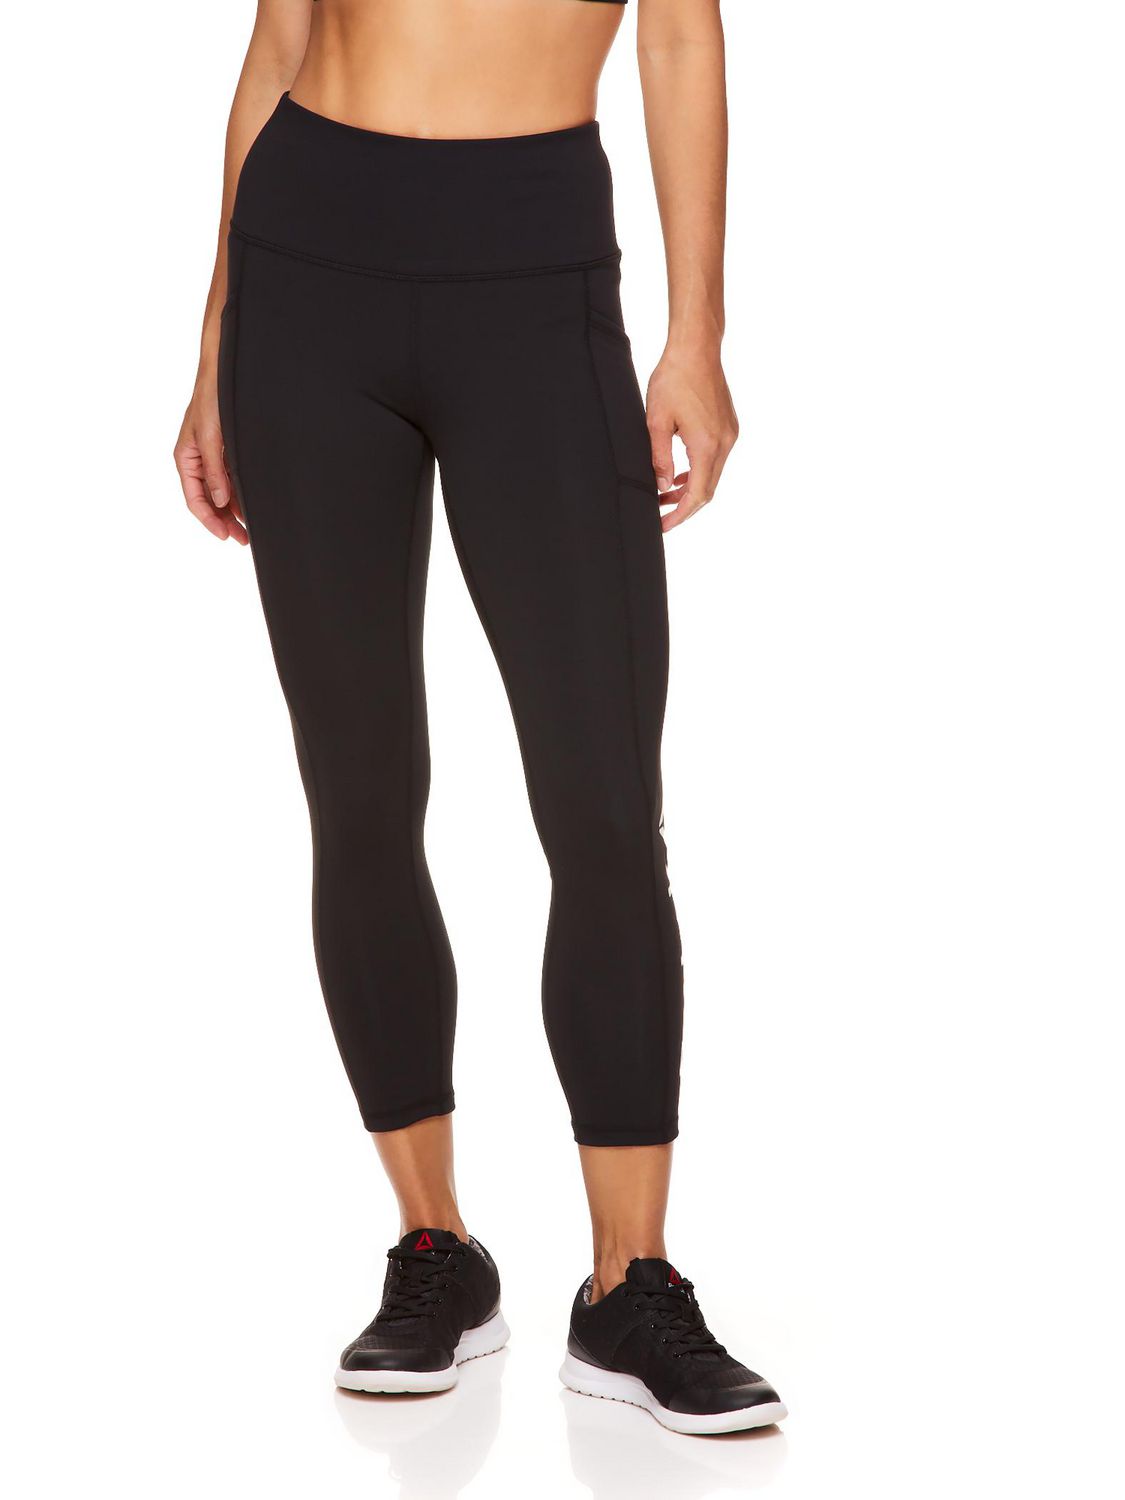 reebok womens capri leggings workout pants size XL Black